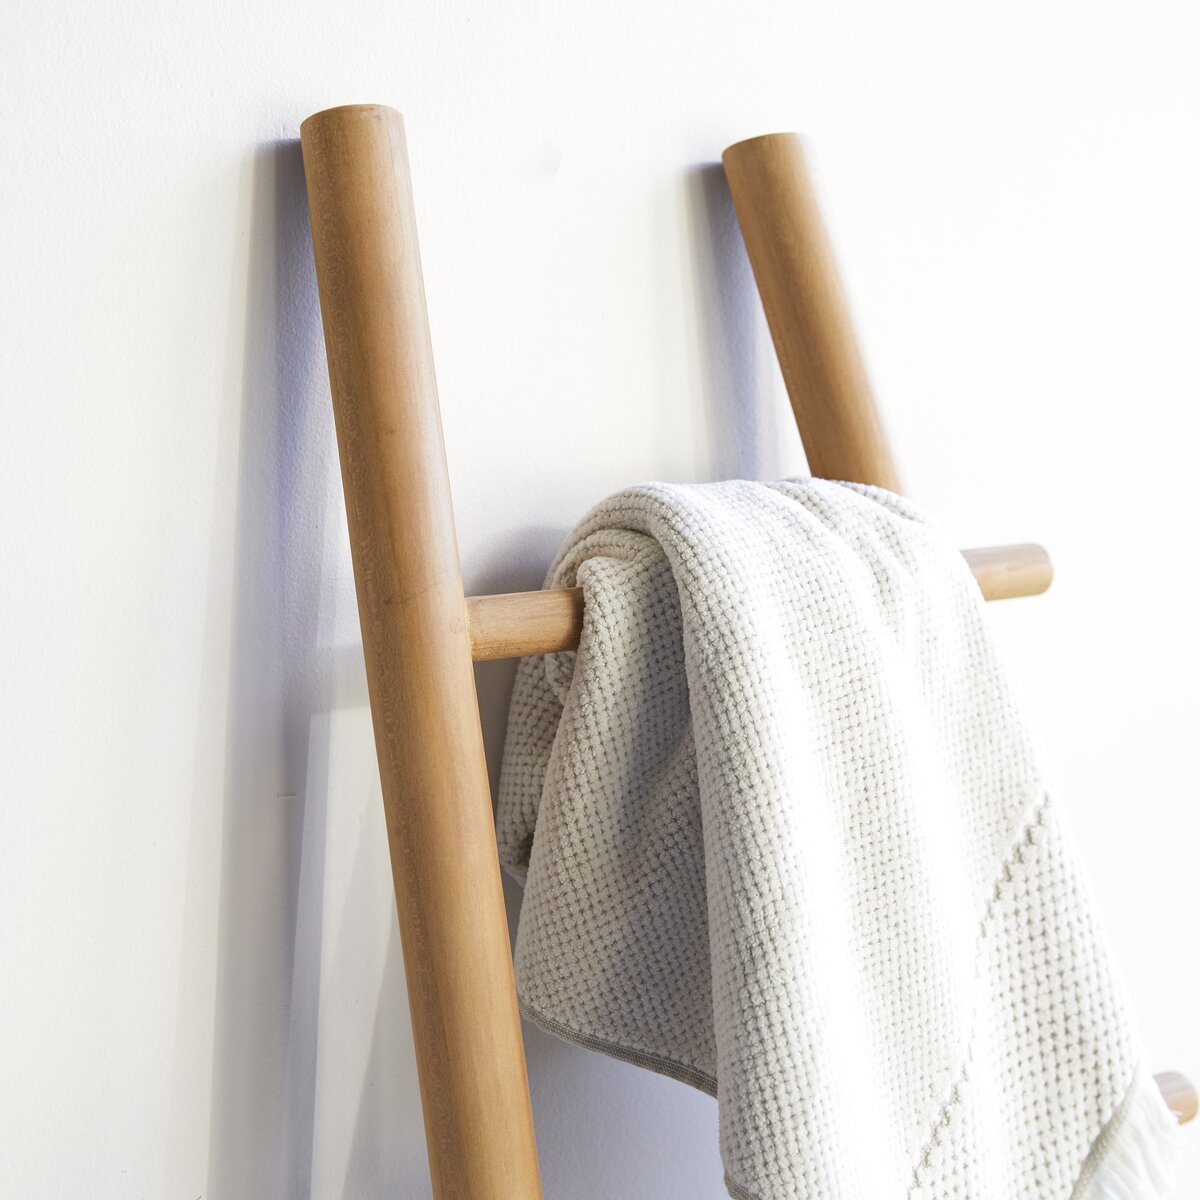 Escalera toallero de bambú marrón claro